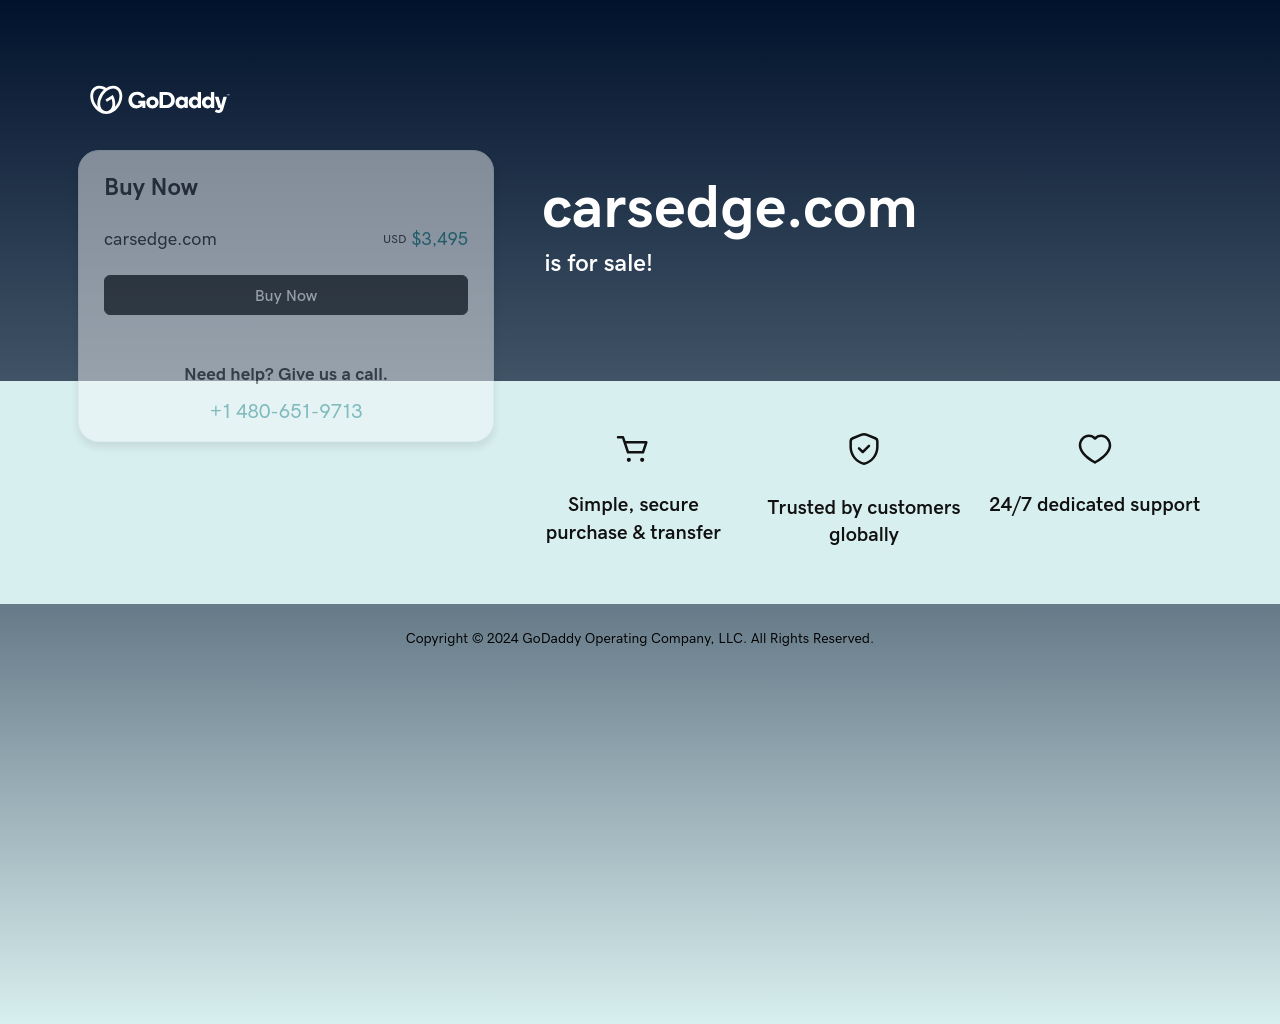 carsedge.com